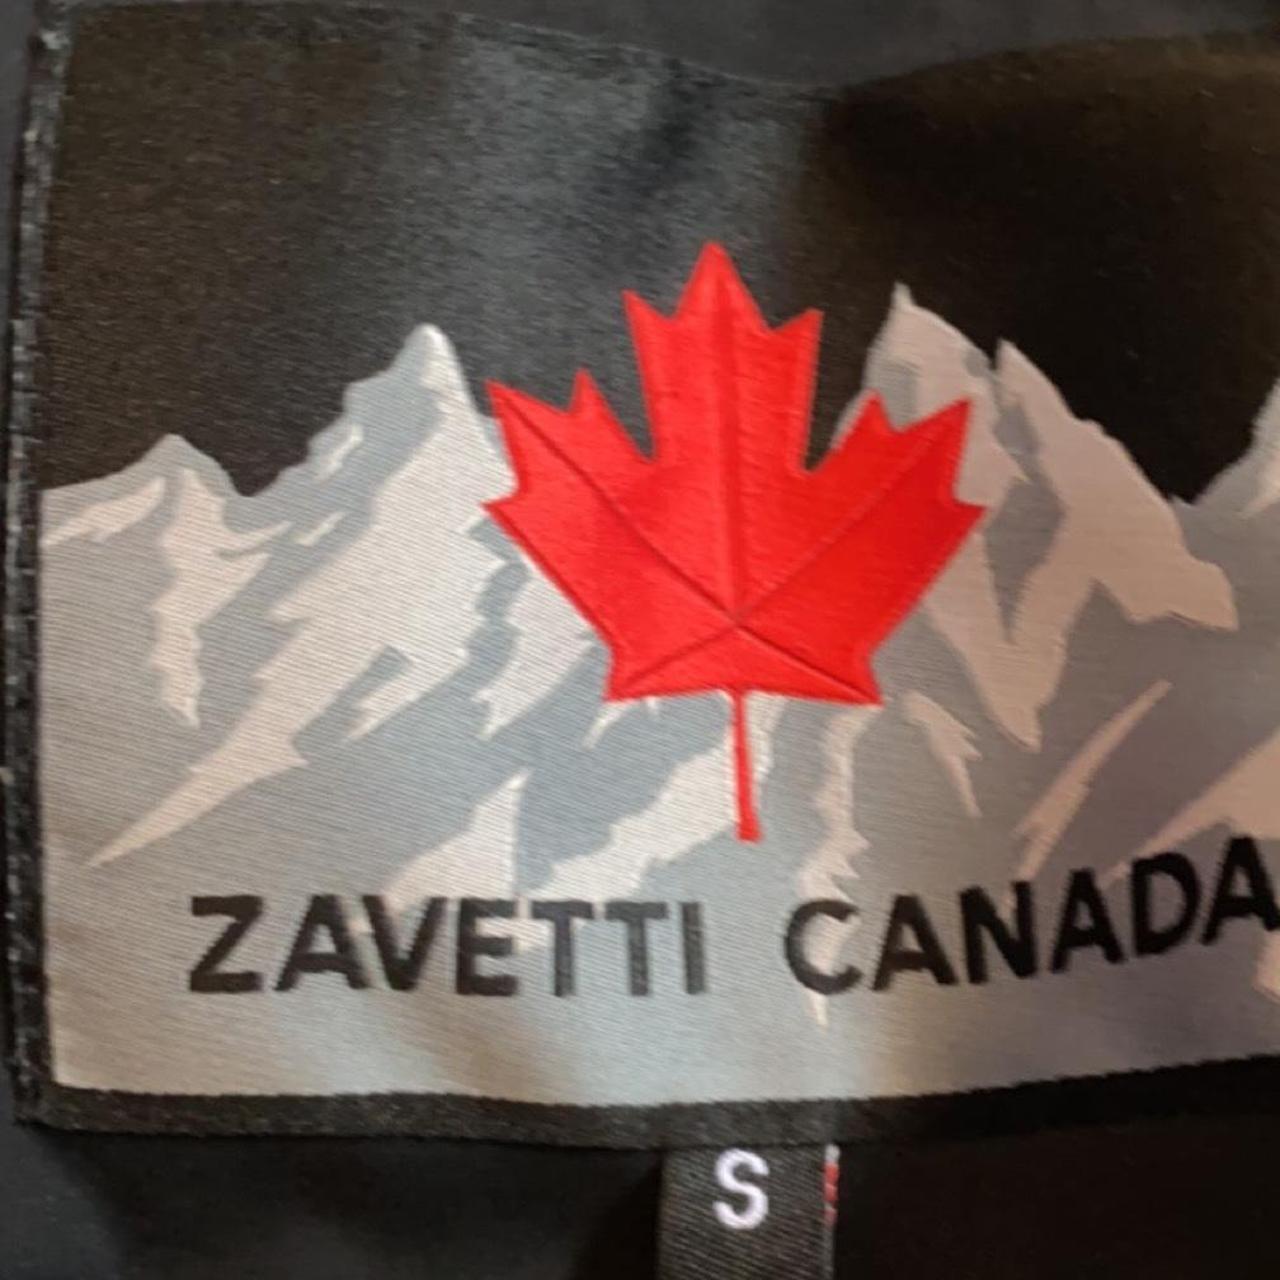 Zavetti Canada grey puffer jacket good quality - Depop